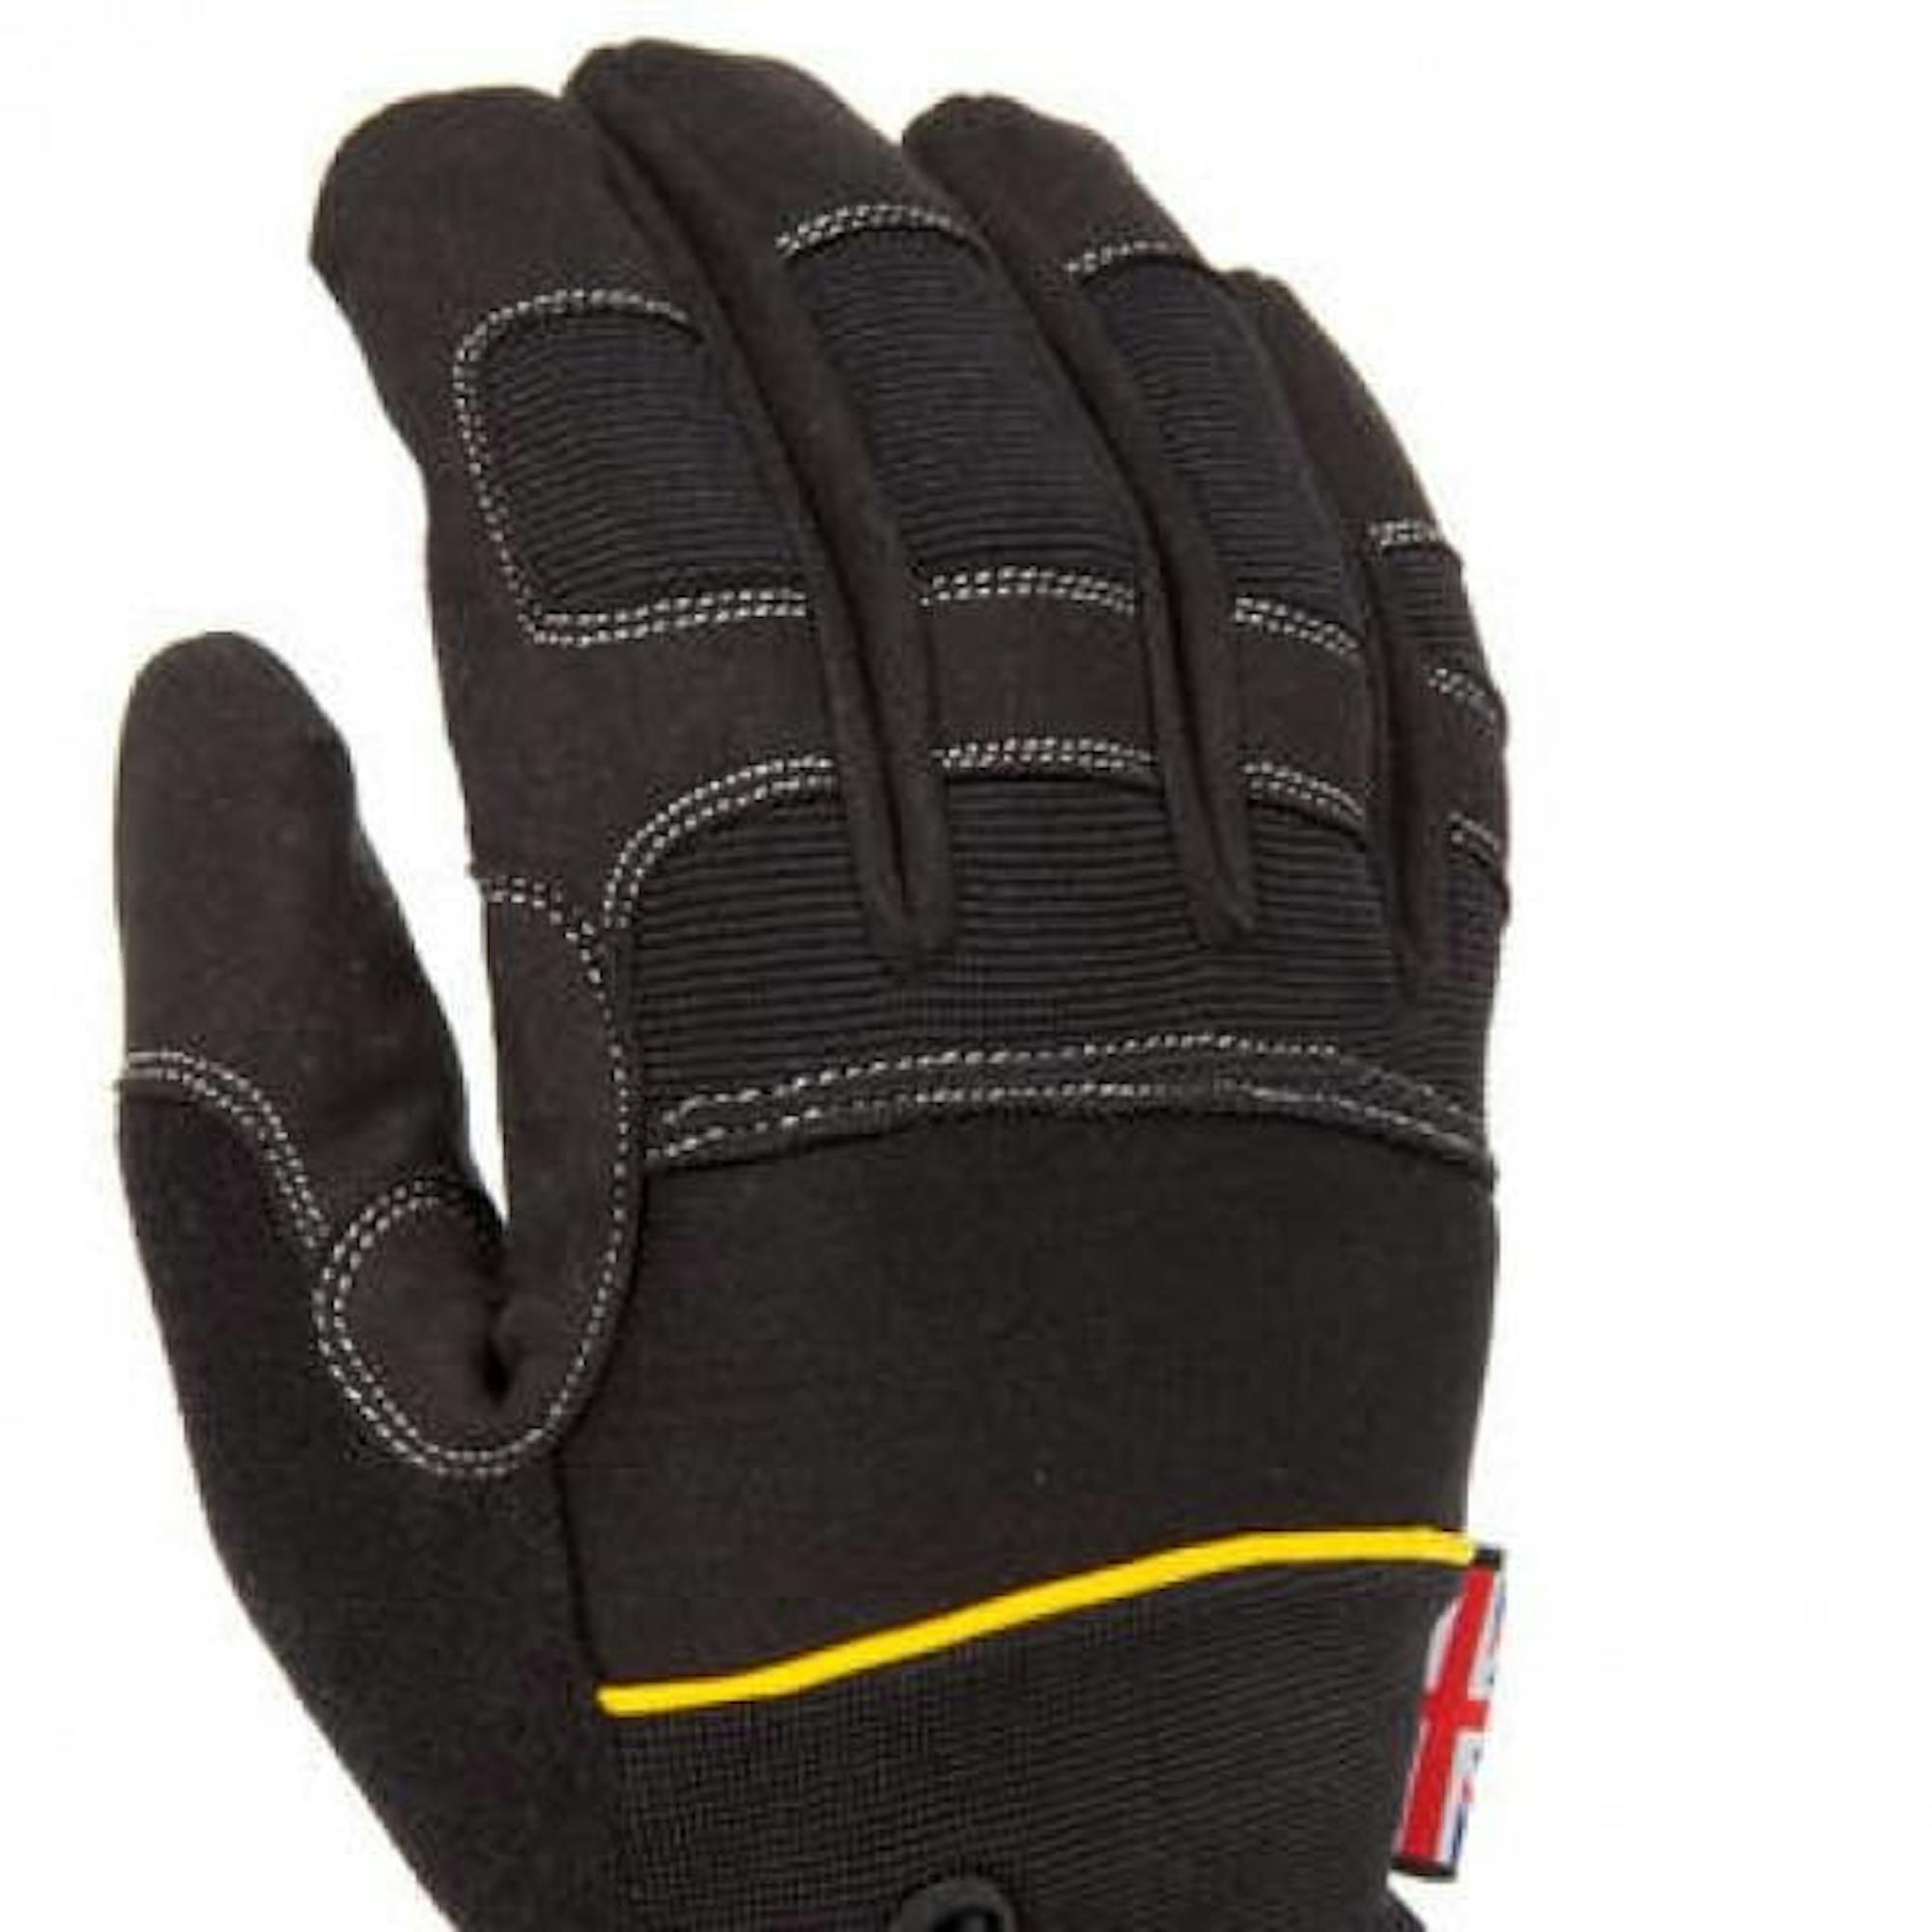 Dirty Rigger Comfort Fit Gloves Full finger S